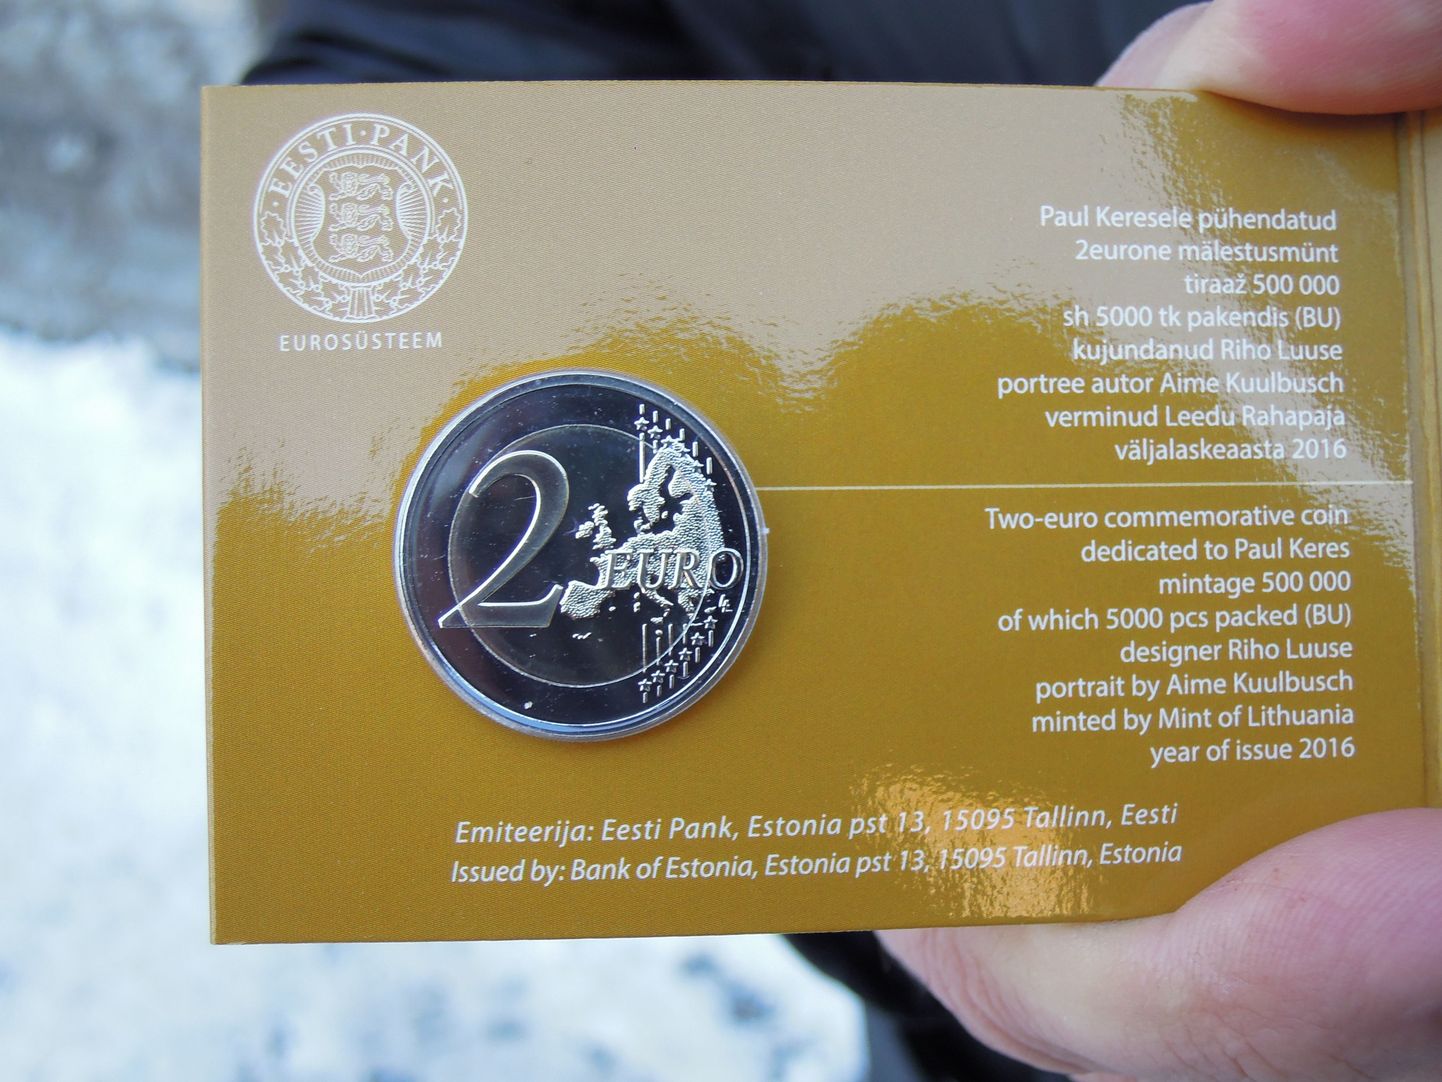 Paul Keres 100 kahe eurone münt